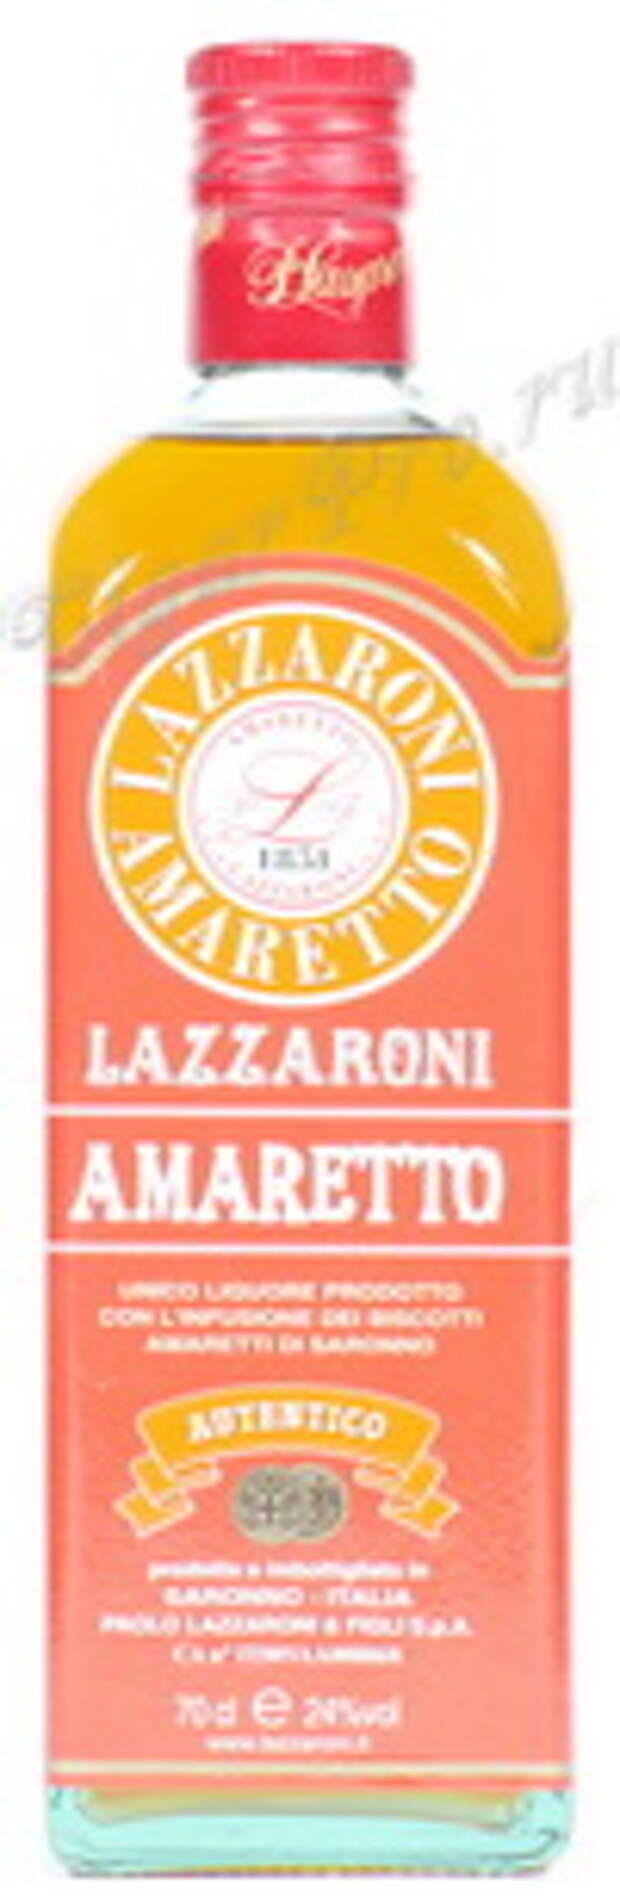 Ликер Amaretto Lazaroni 1851 0.7 Ликер Амаретто Лазарони 1851 0.7